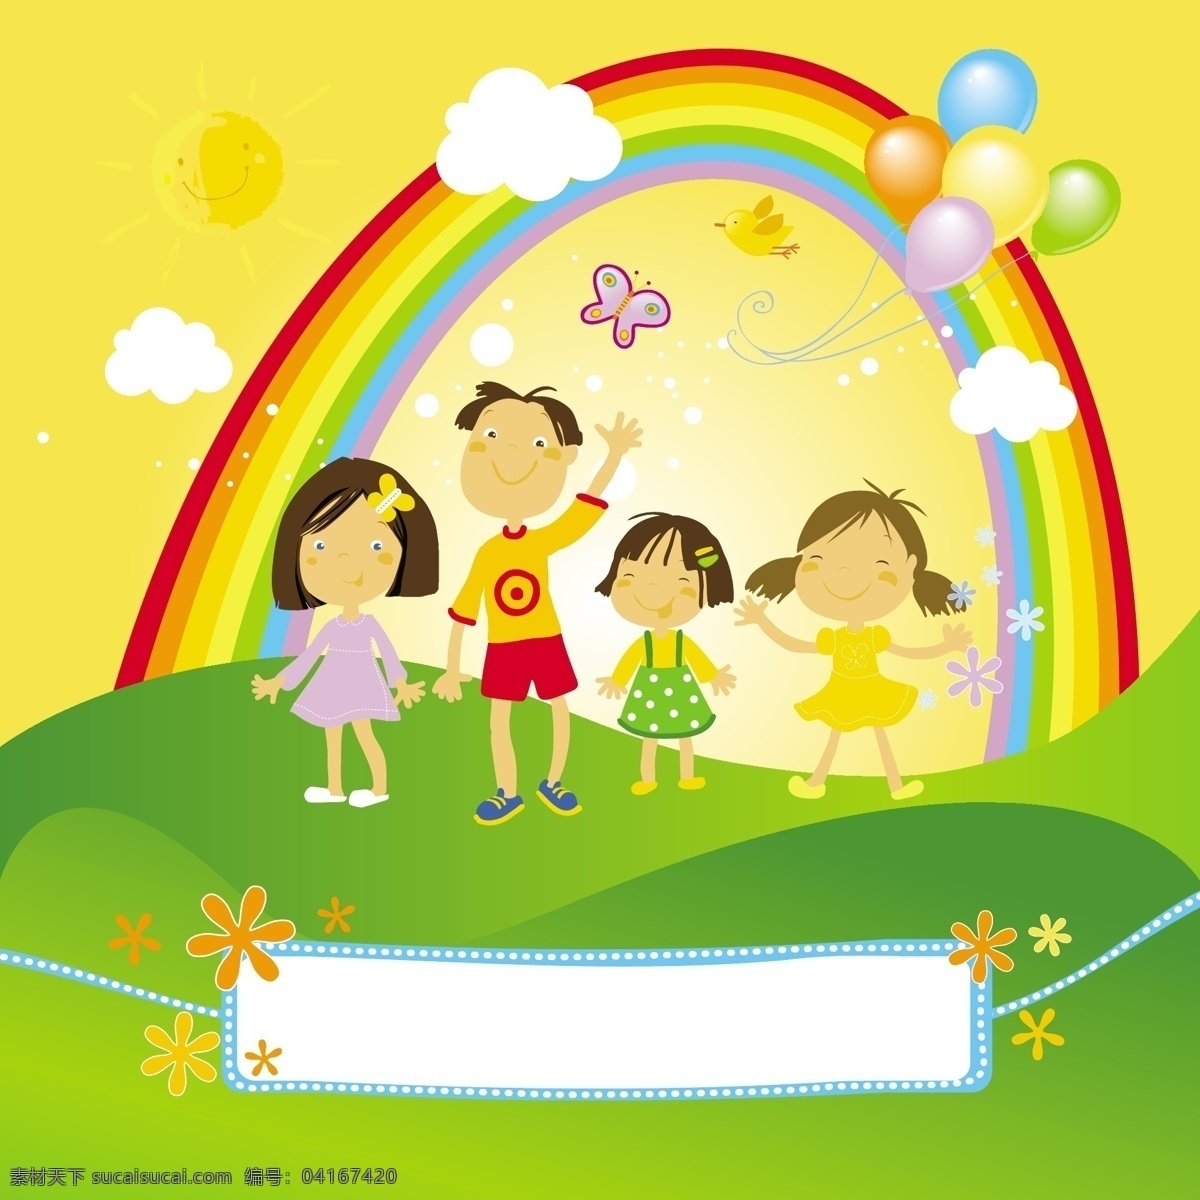 快乐 儿童 五十六个民族 五颜六色 节日素材 其他节日